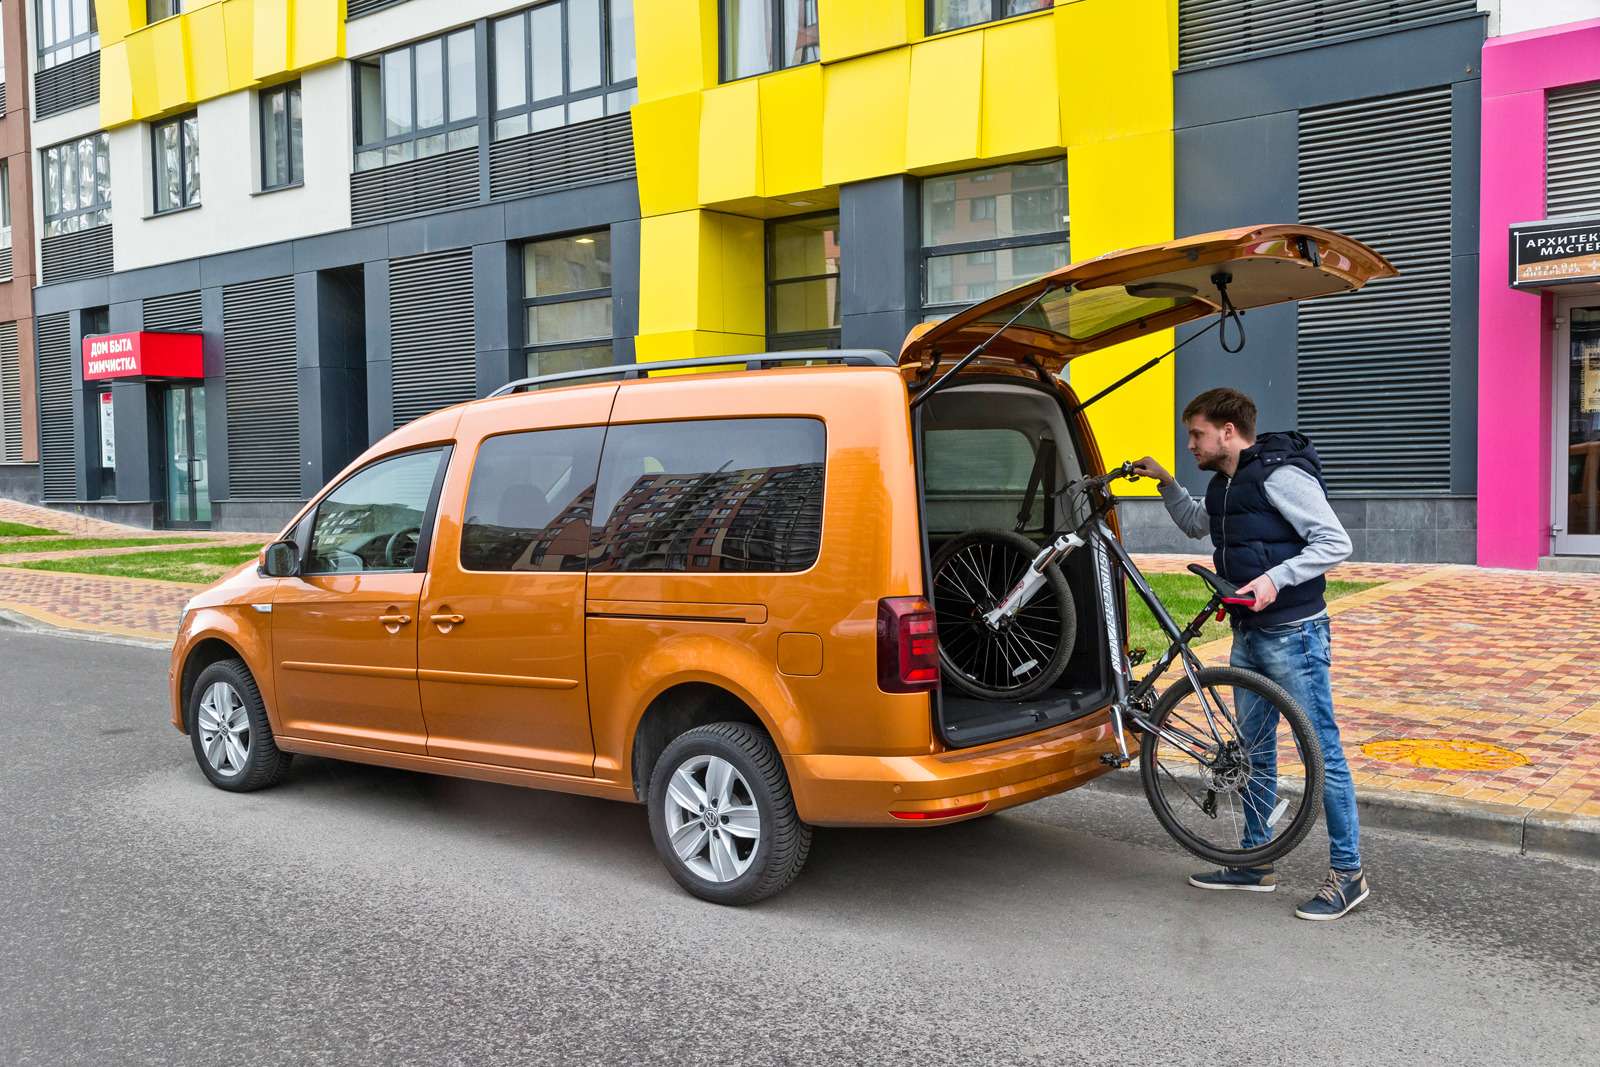 Высота крыши Caddy Maxi позволяет закатить внутрь взрослый велосипед, не снимая переднее колесо. Именно в такие моменты проникаешься особым уважением к Фольксвагену.